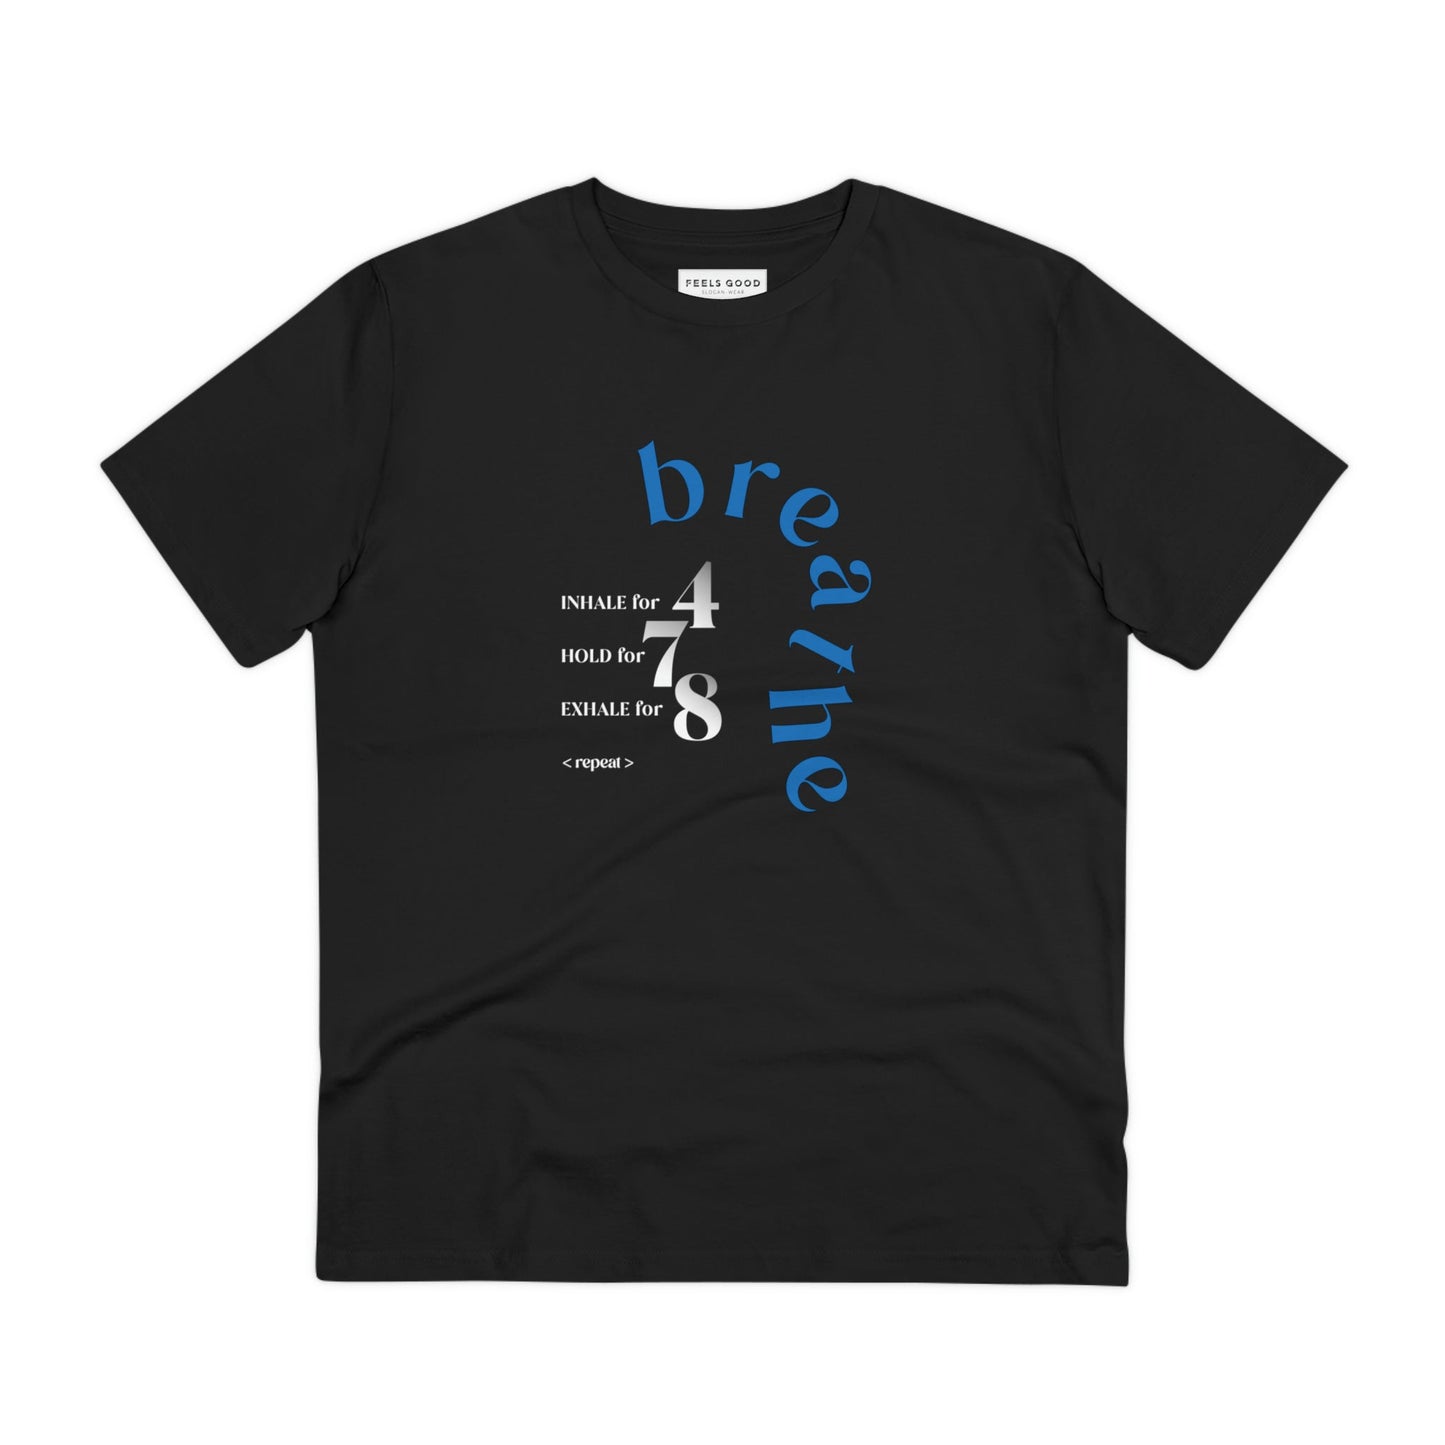 Meditation 'Breathe' Organic Cotton T-shirt - Eco Tshirt